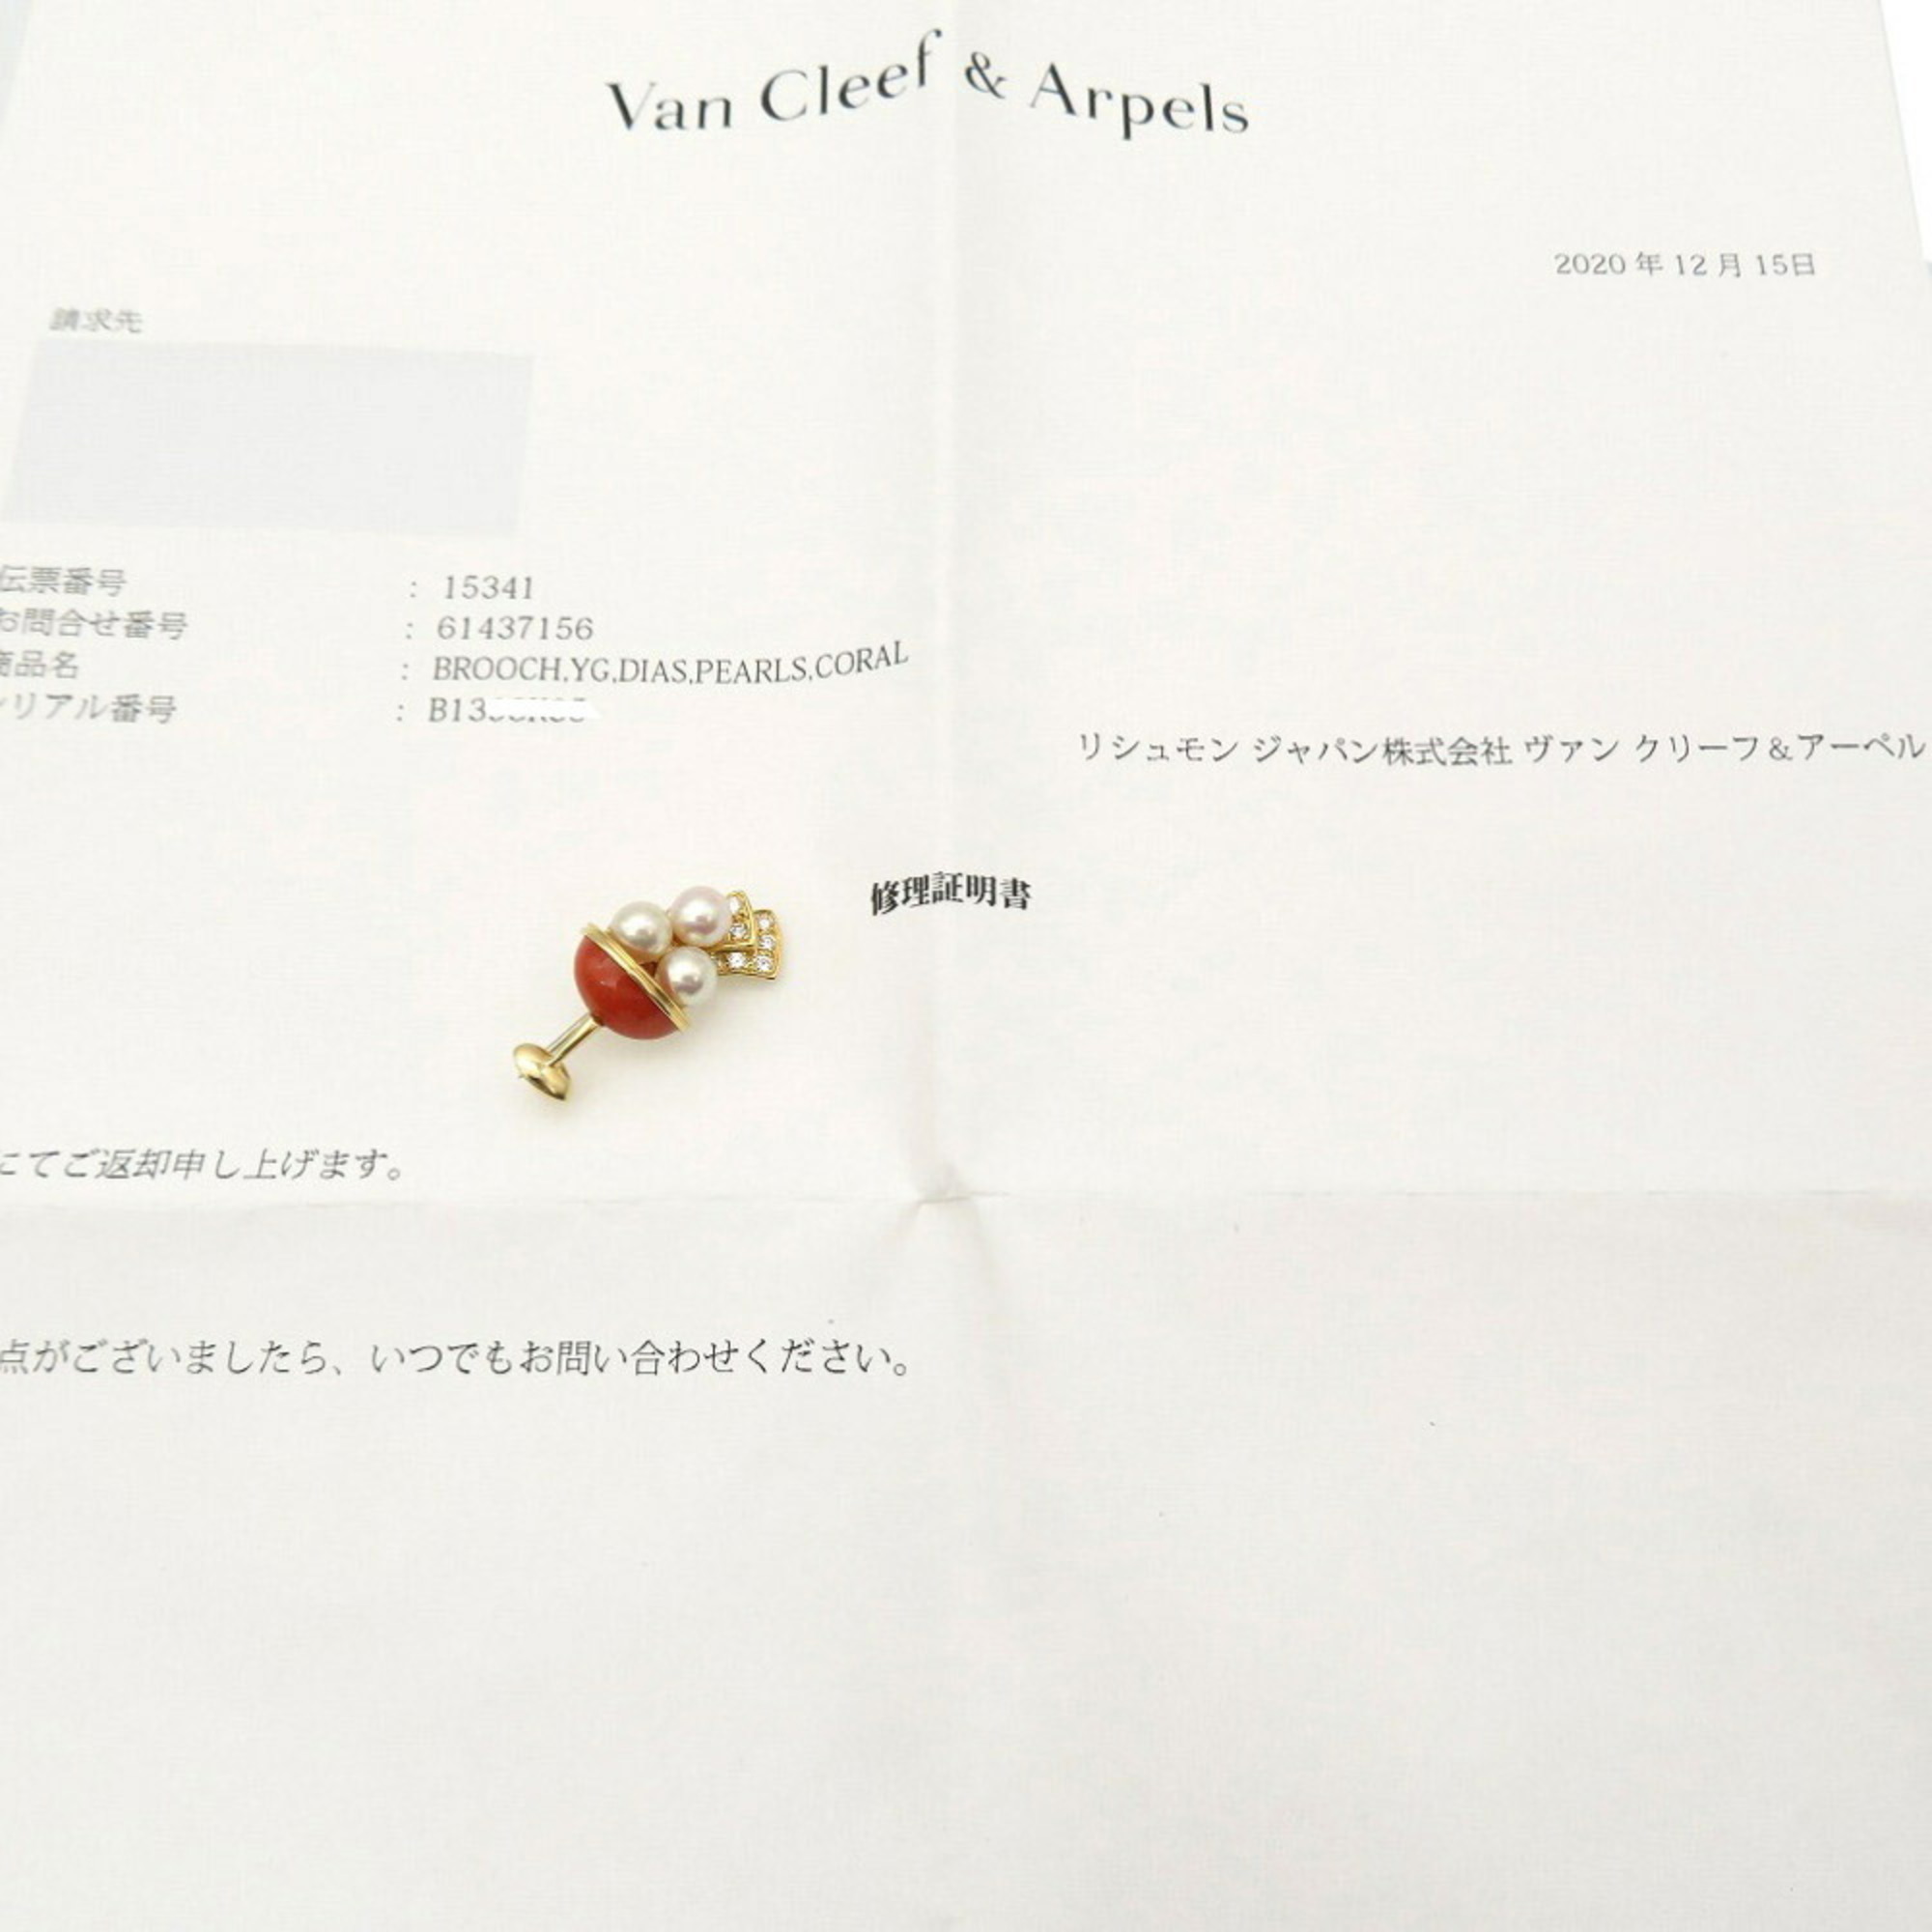 Van Cleef & Arpels Parfait Diamond 0.15ct / K18YG Coral Pearl Brooch Red 0137Van